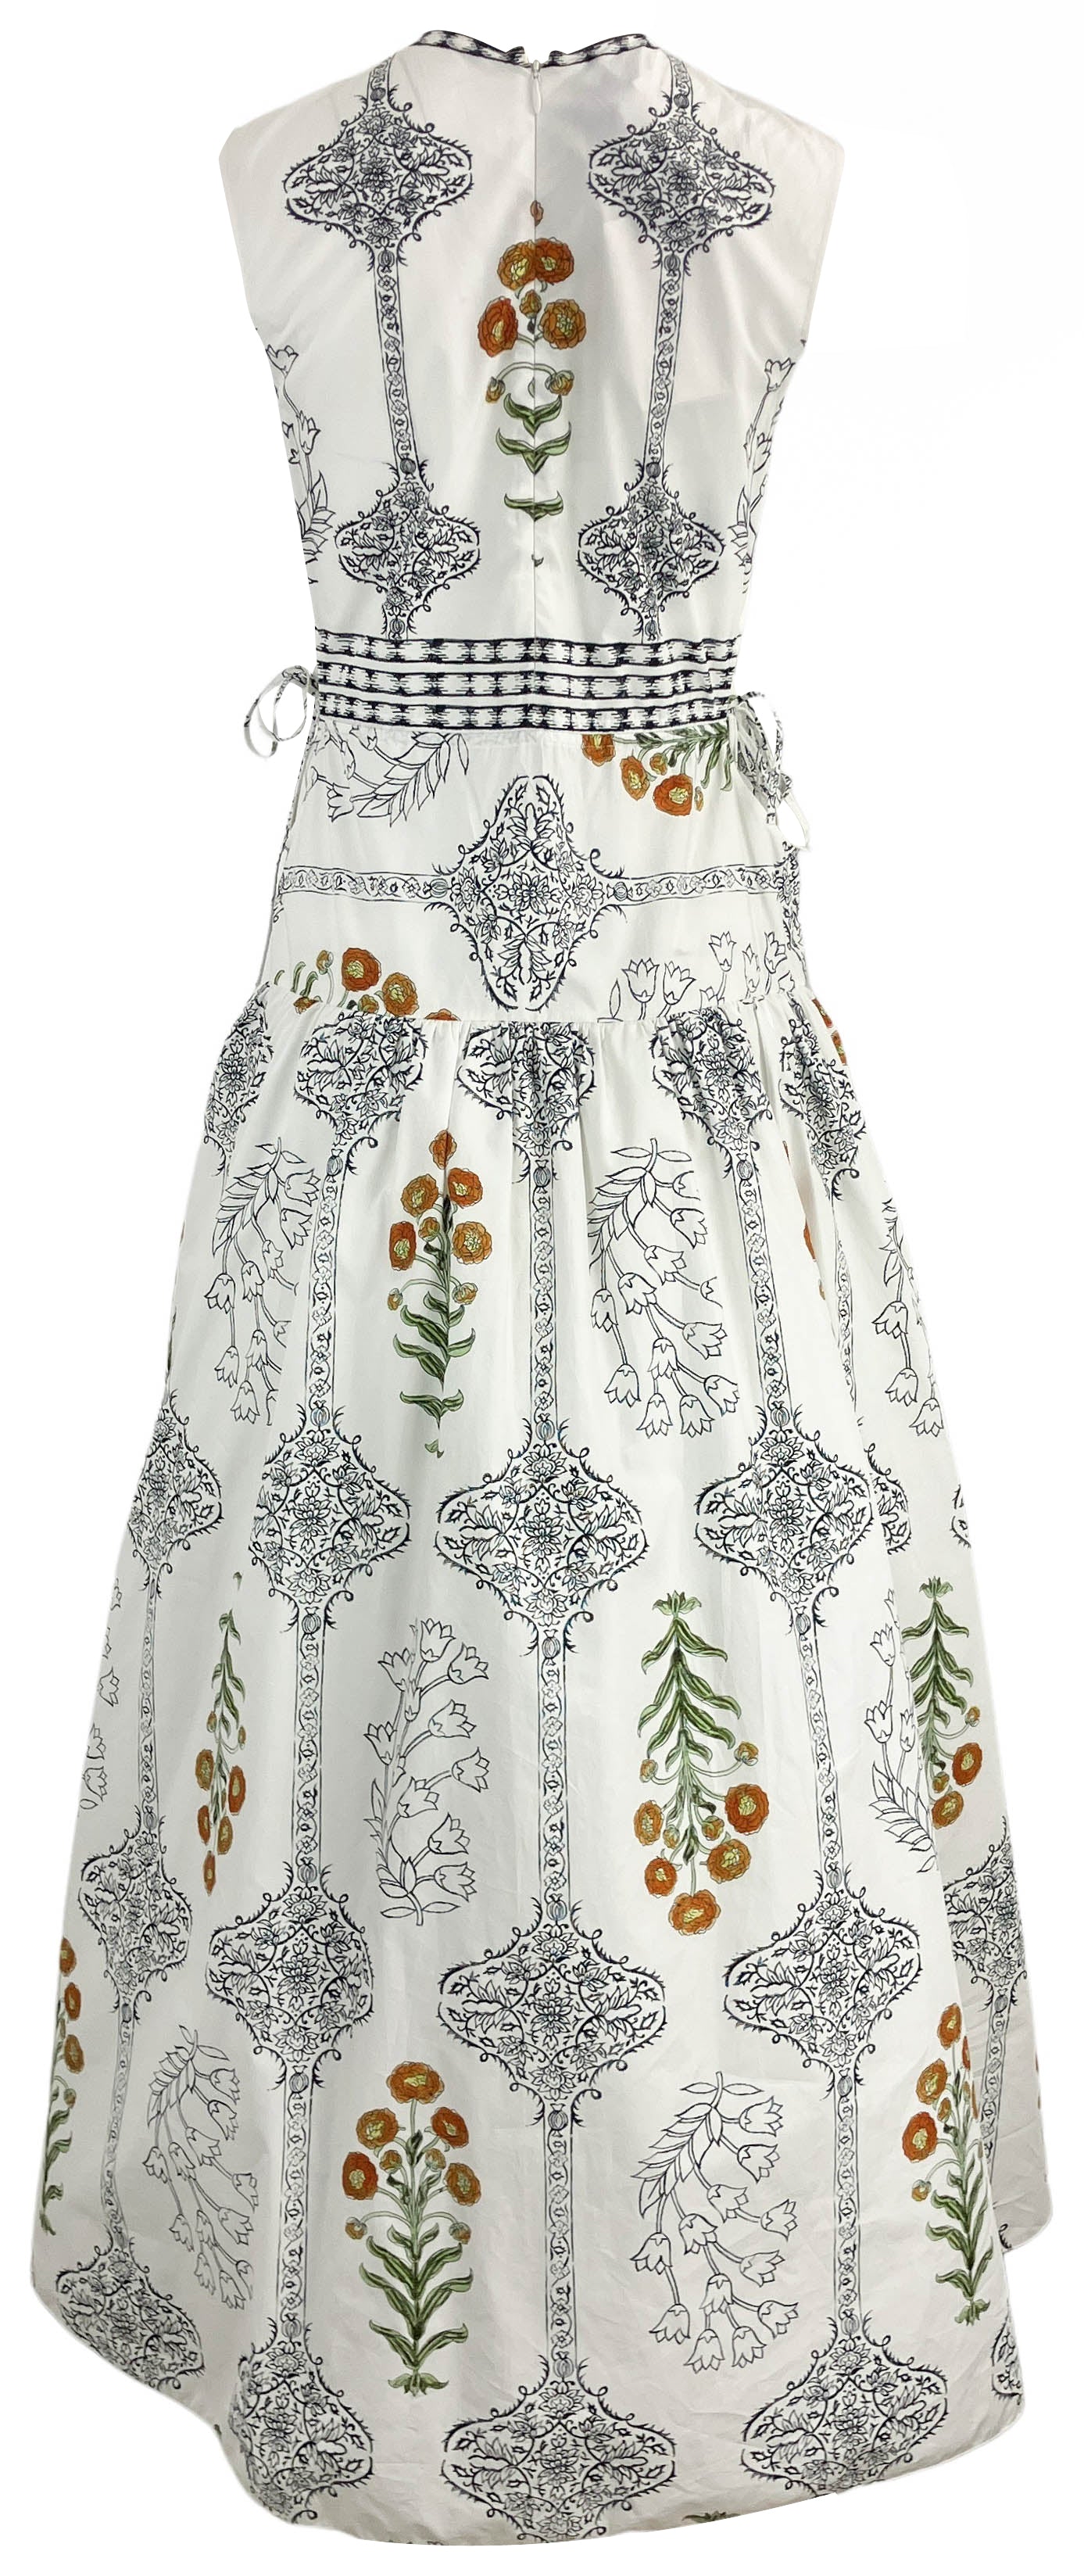 Giambattista Valli Floral Baroque Cut-Out Midi Dress in White - Discounts on Giambattista Valli at UAL